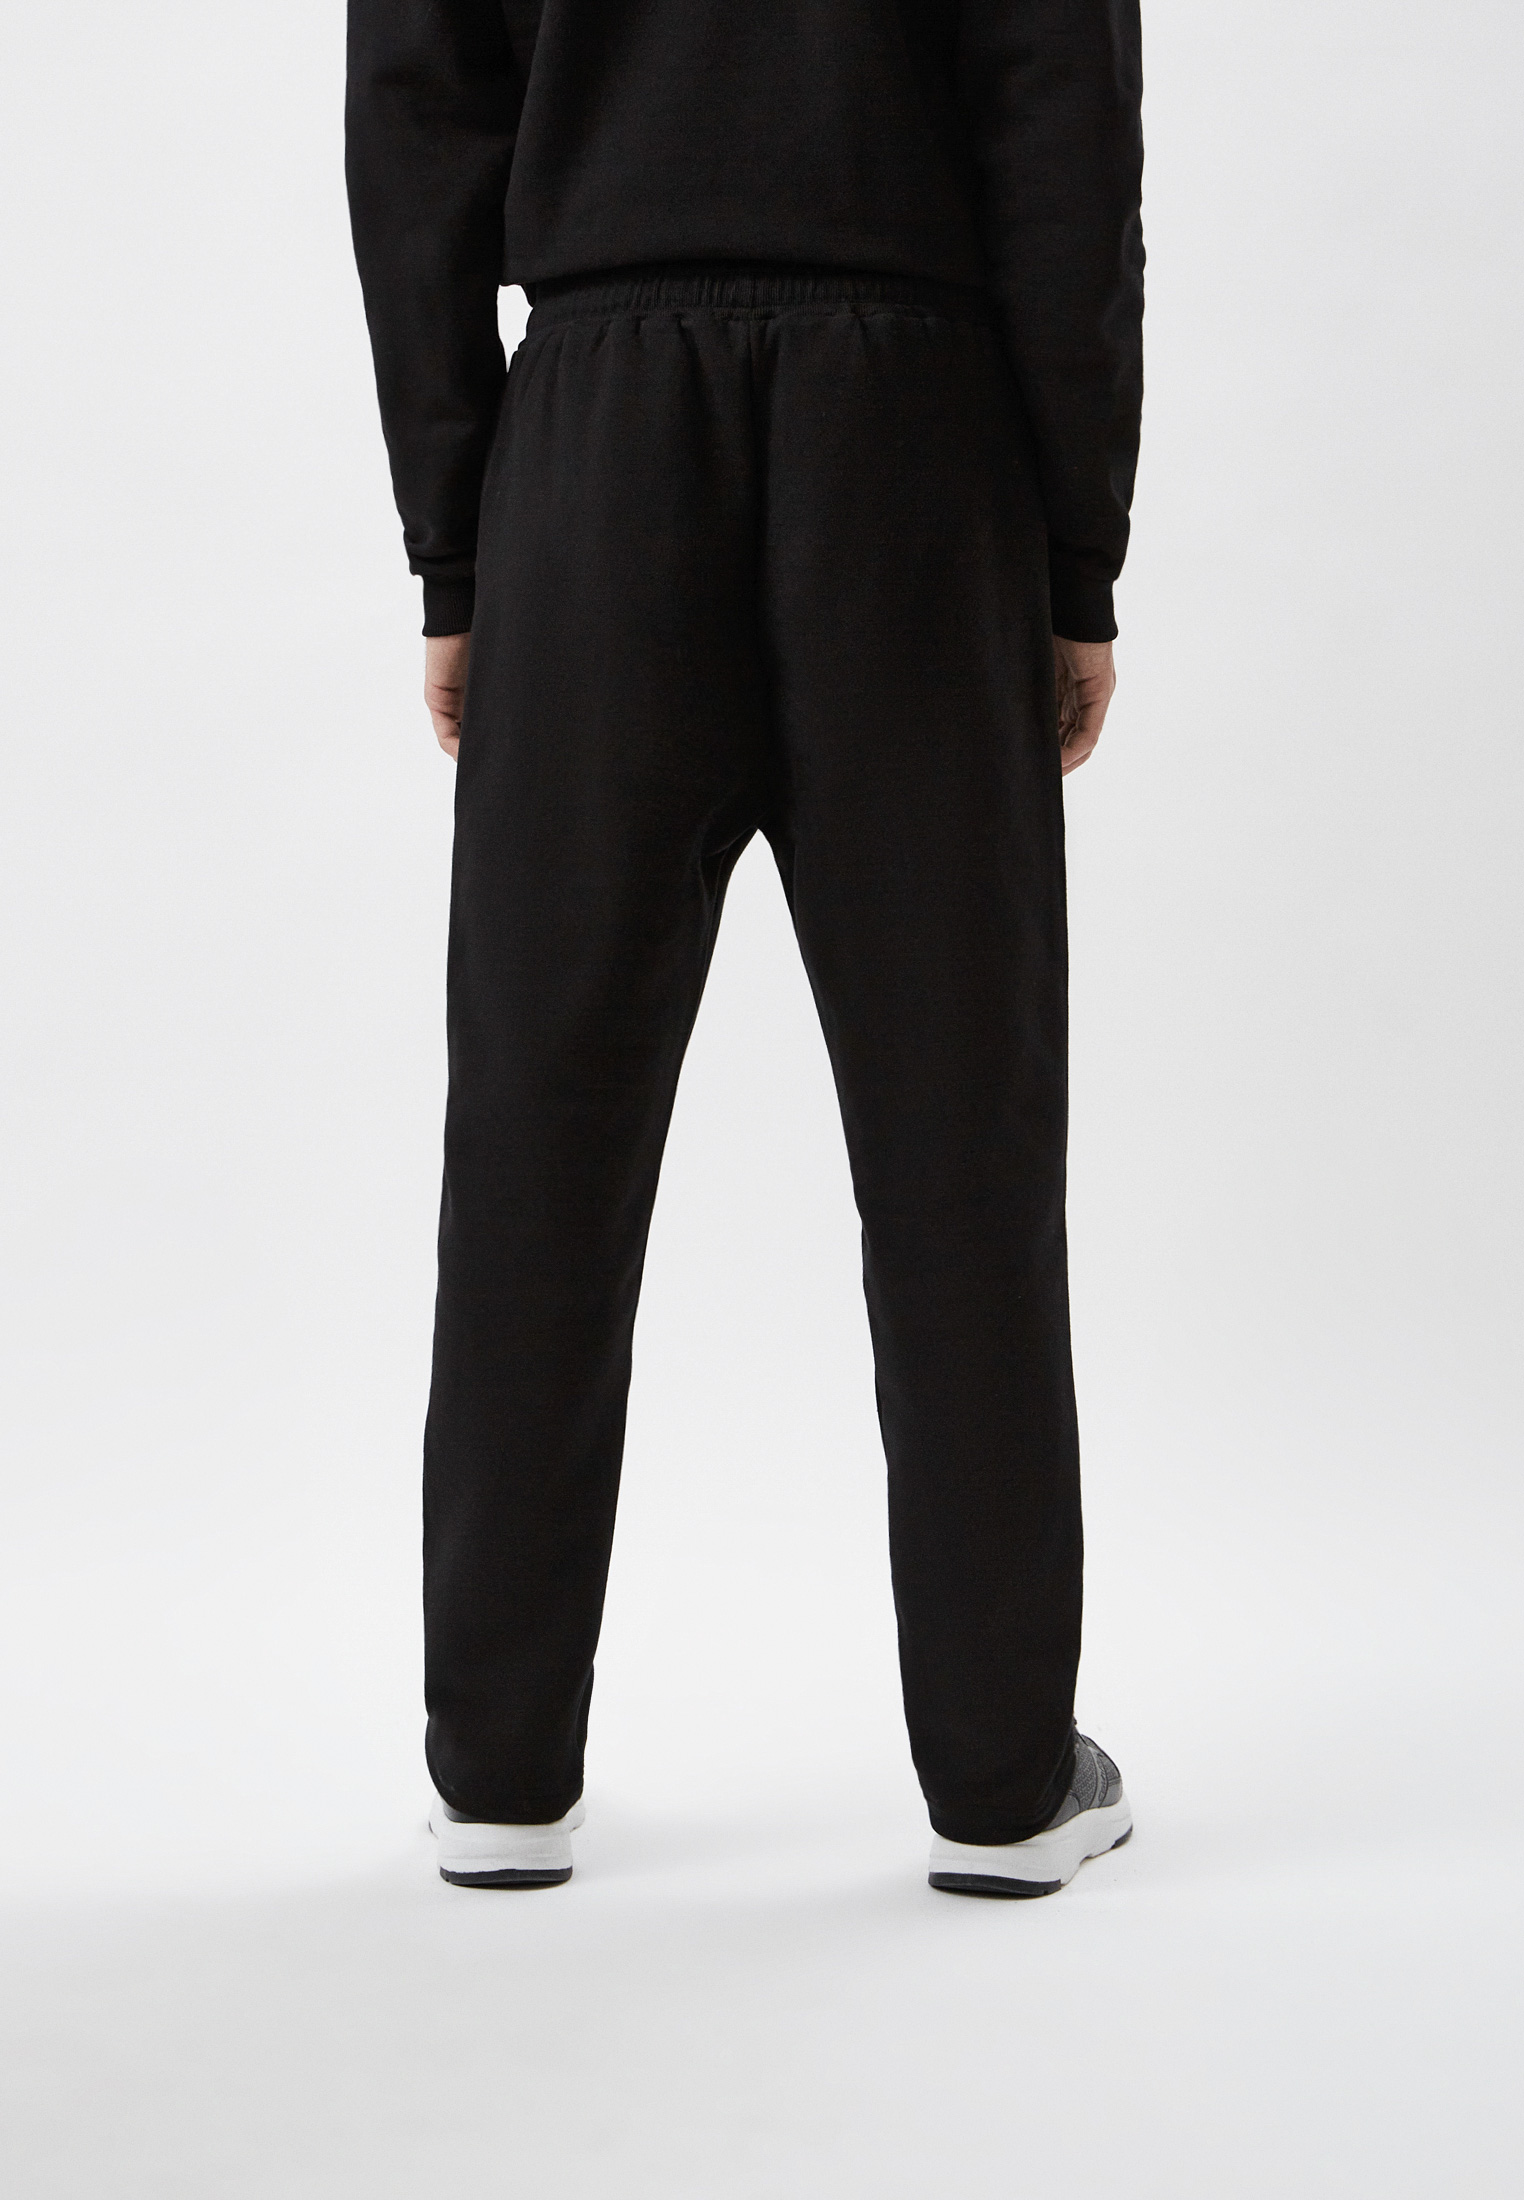 Мужские спортивные брюки Baldinini (Балдинини) M14: изображение 3